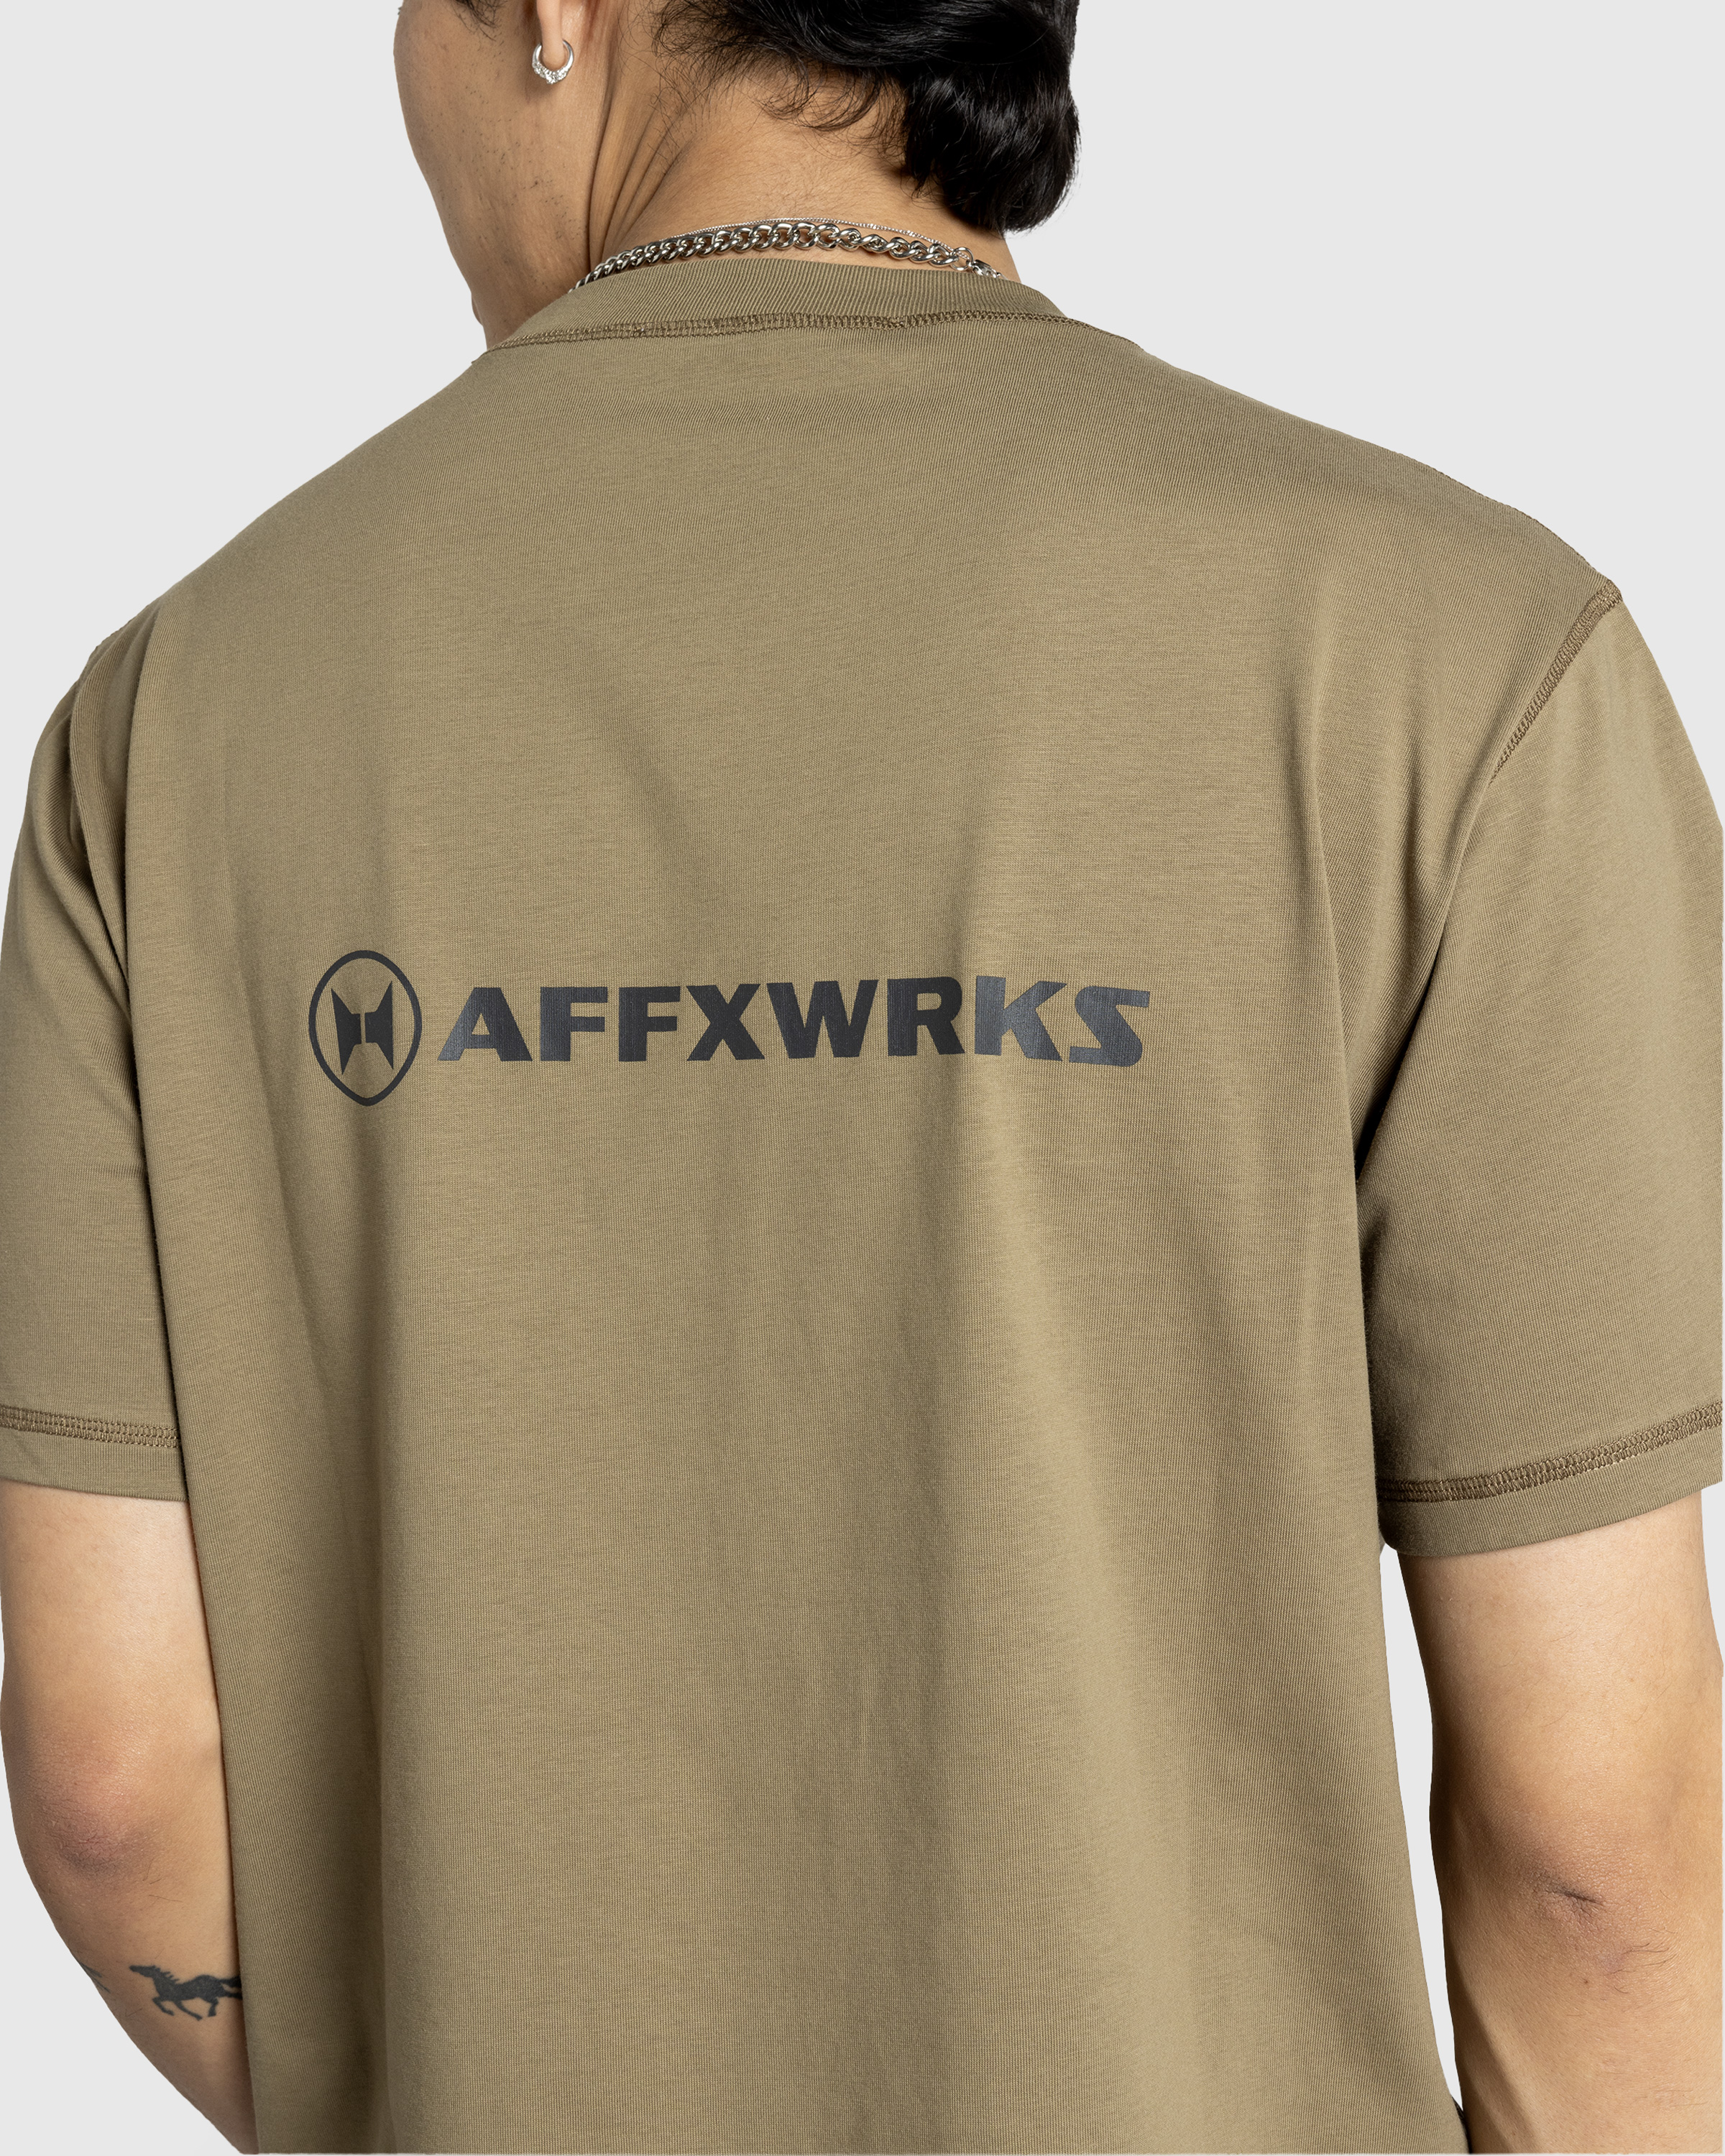 AFFXWRKS – AFFXWRKS T-Shirt Desert Green - T-Shirts - Green - Image 5